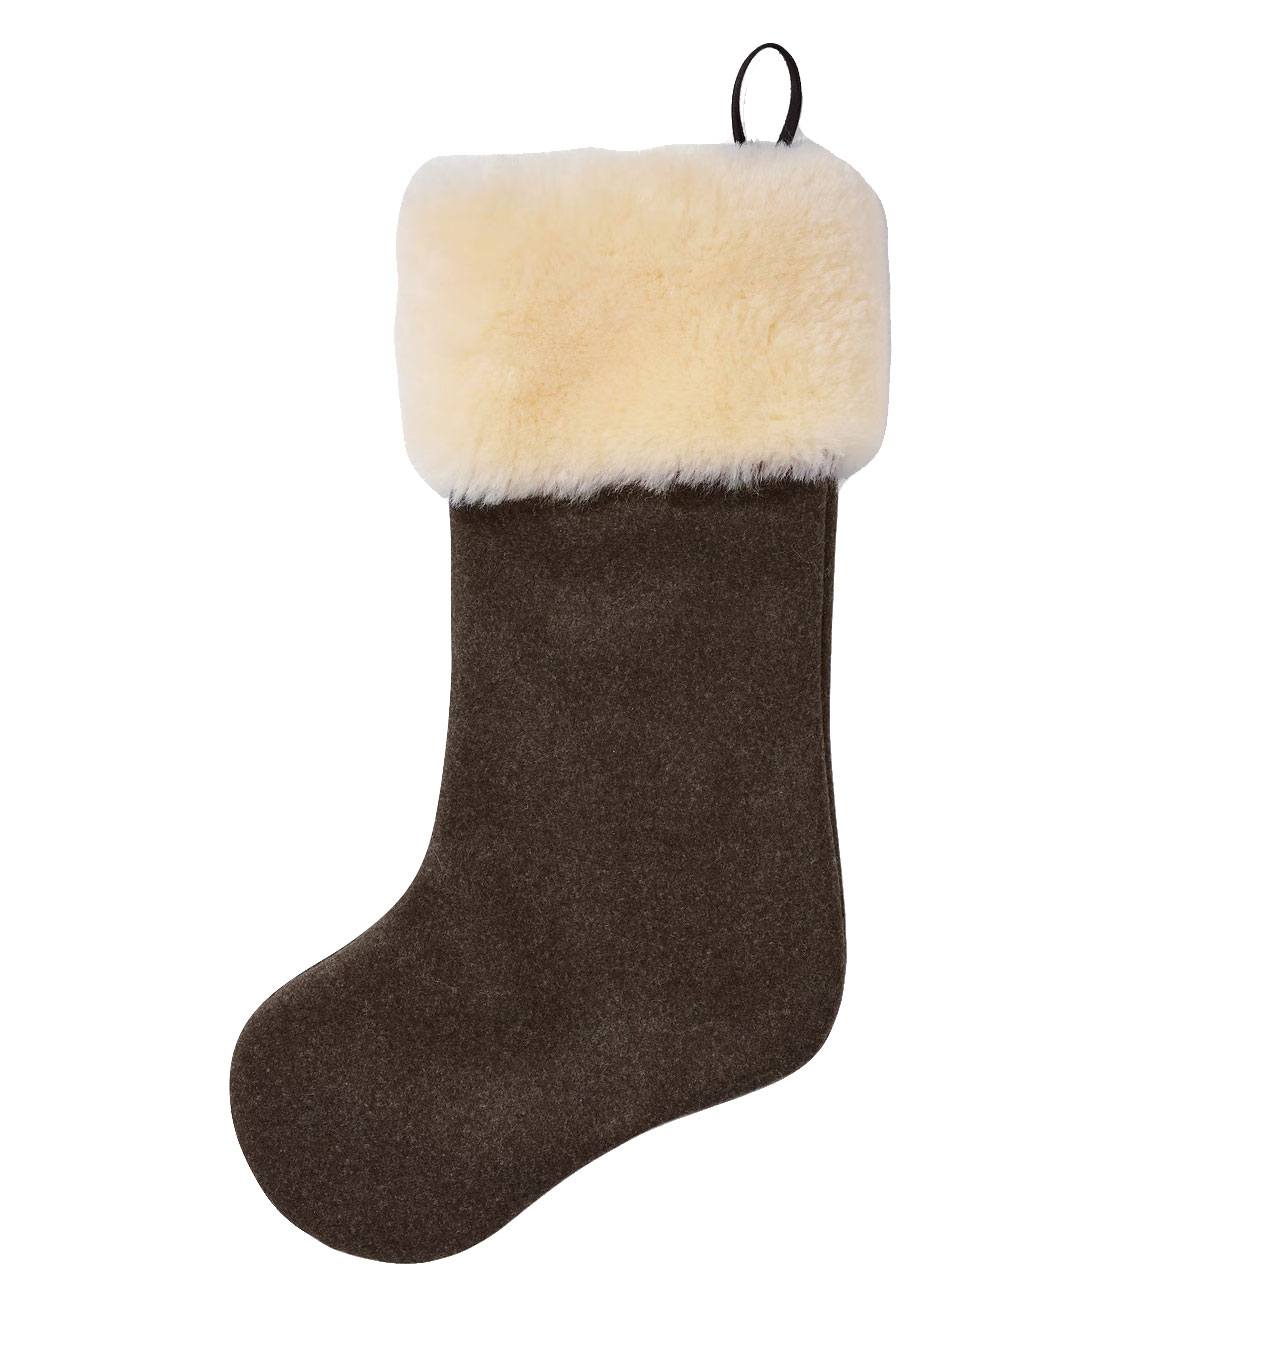 Filson - Mackinaw Wool Christmas Stocking - Brown